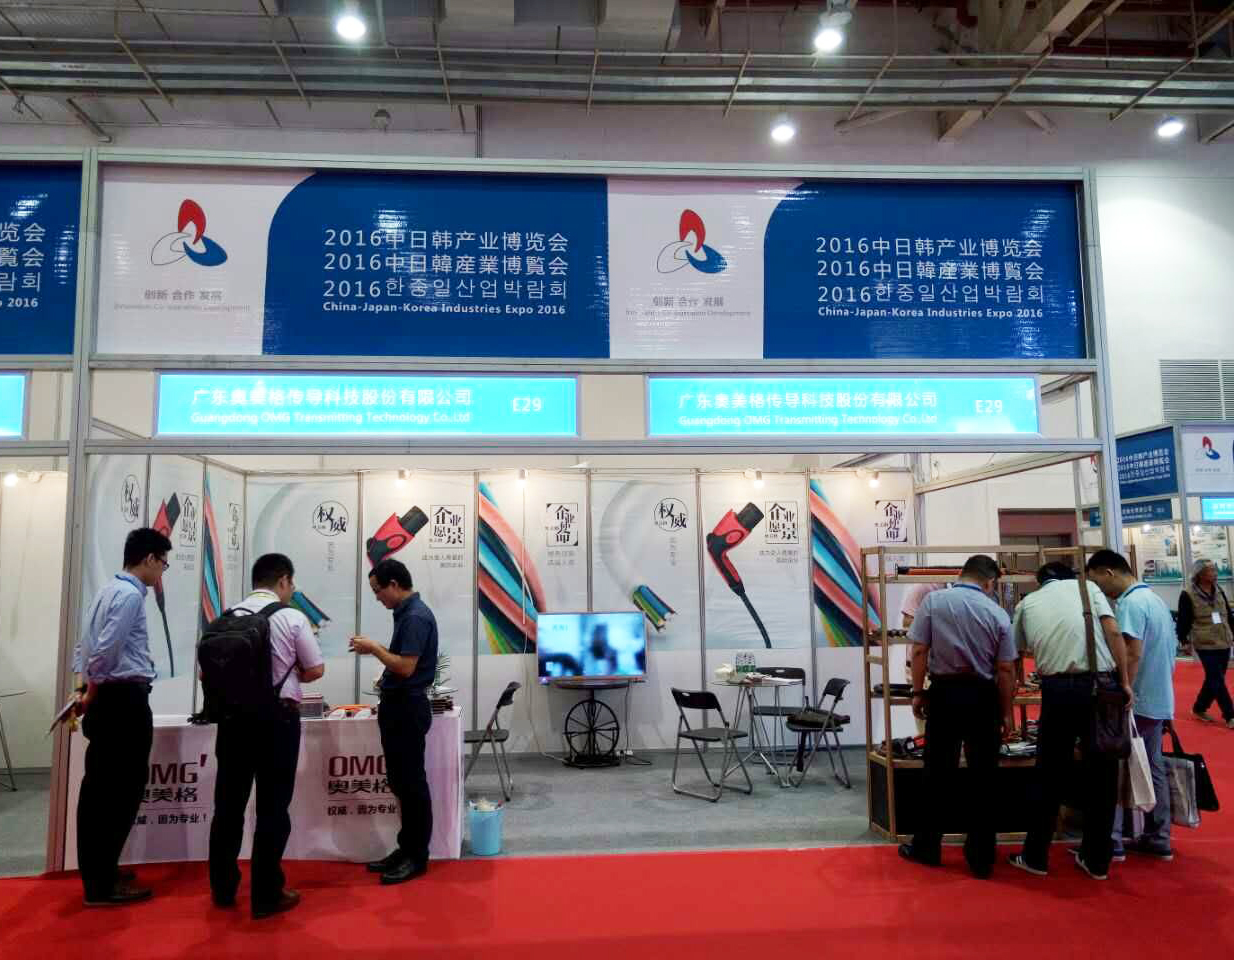 奧美格參加山東濰坊2016中日韓產業博覽會